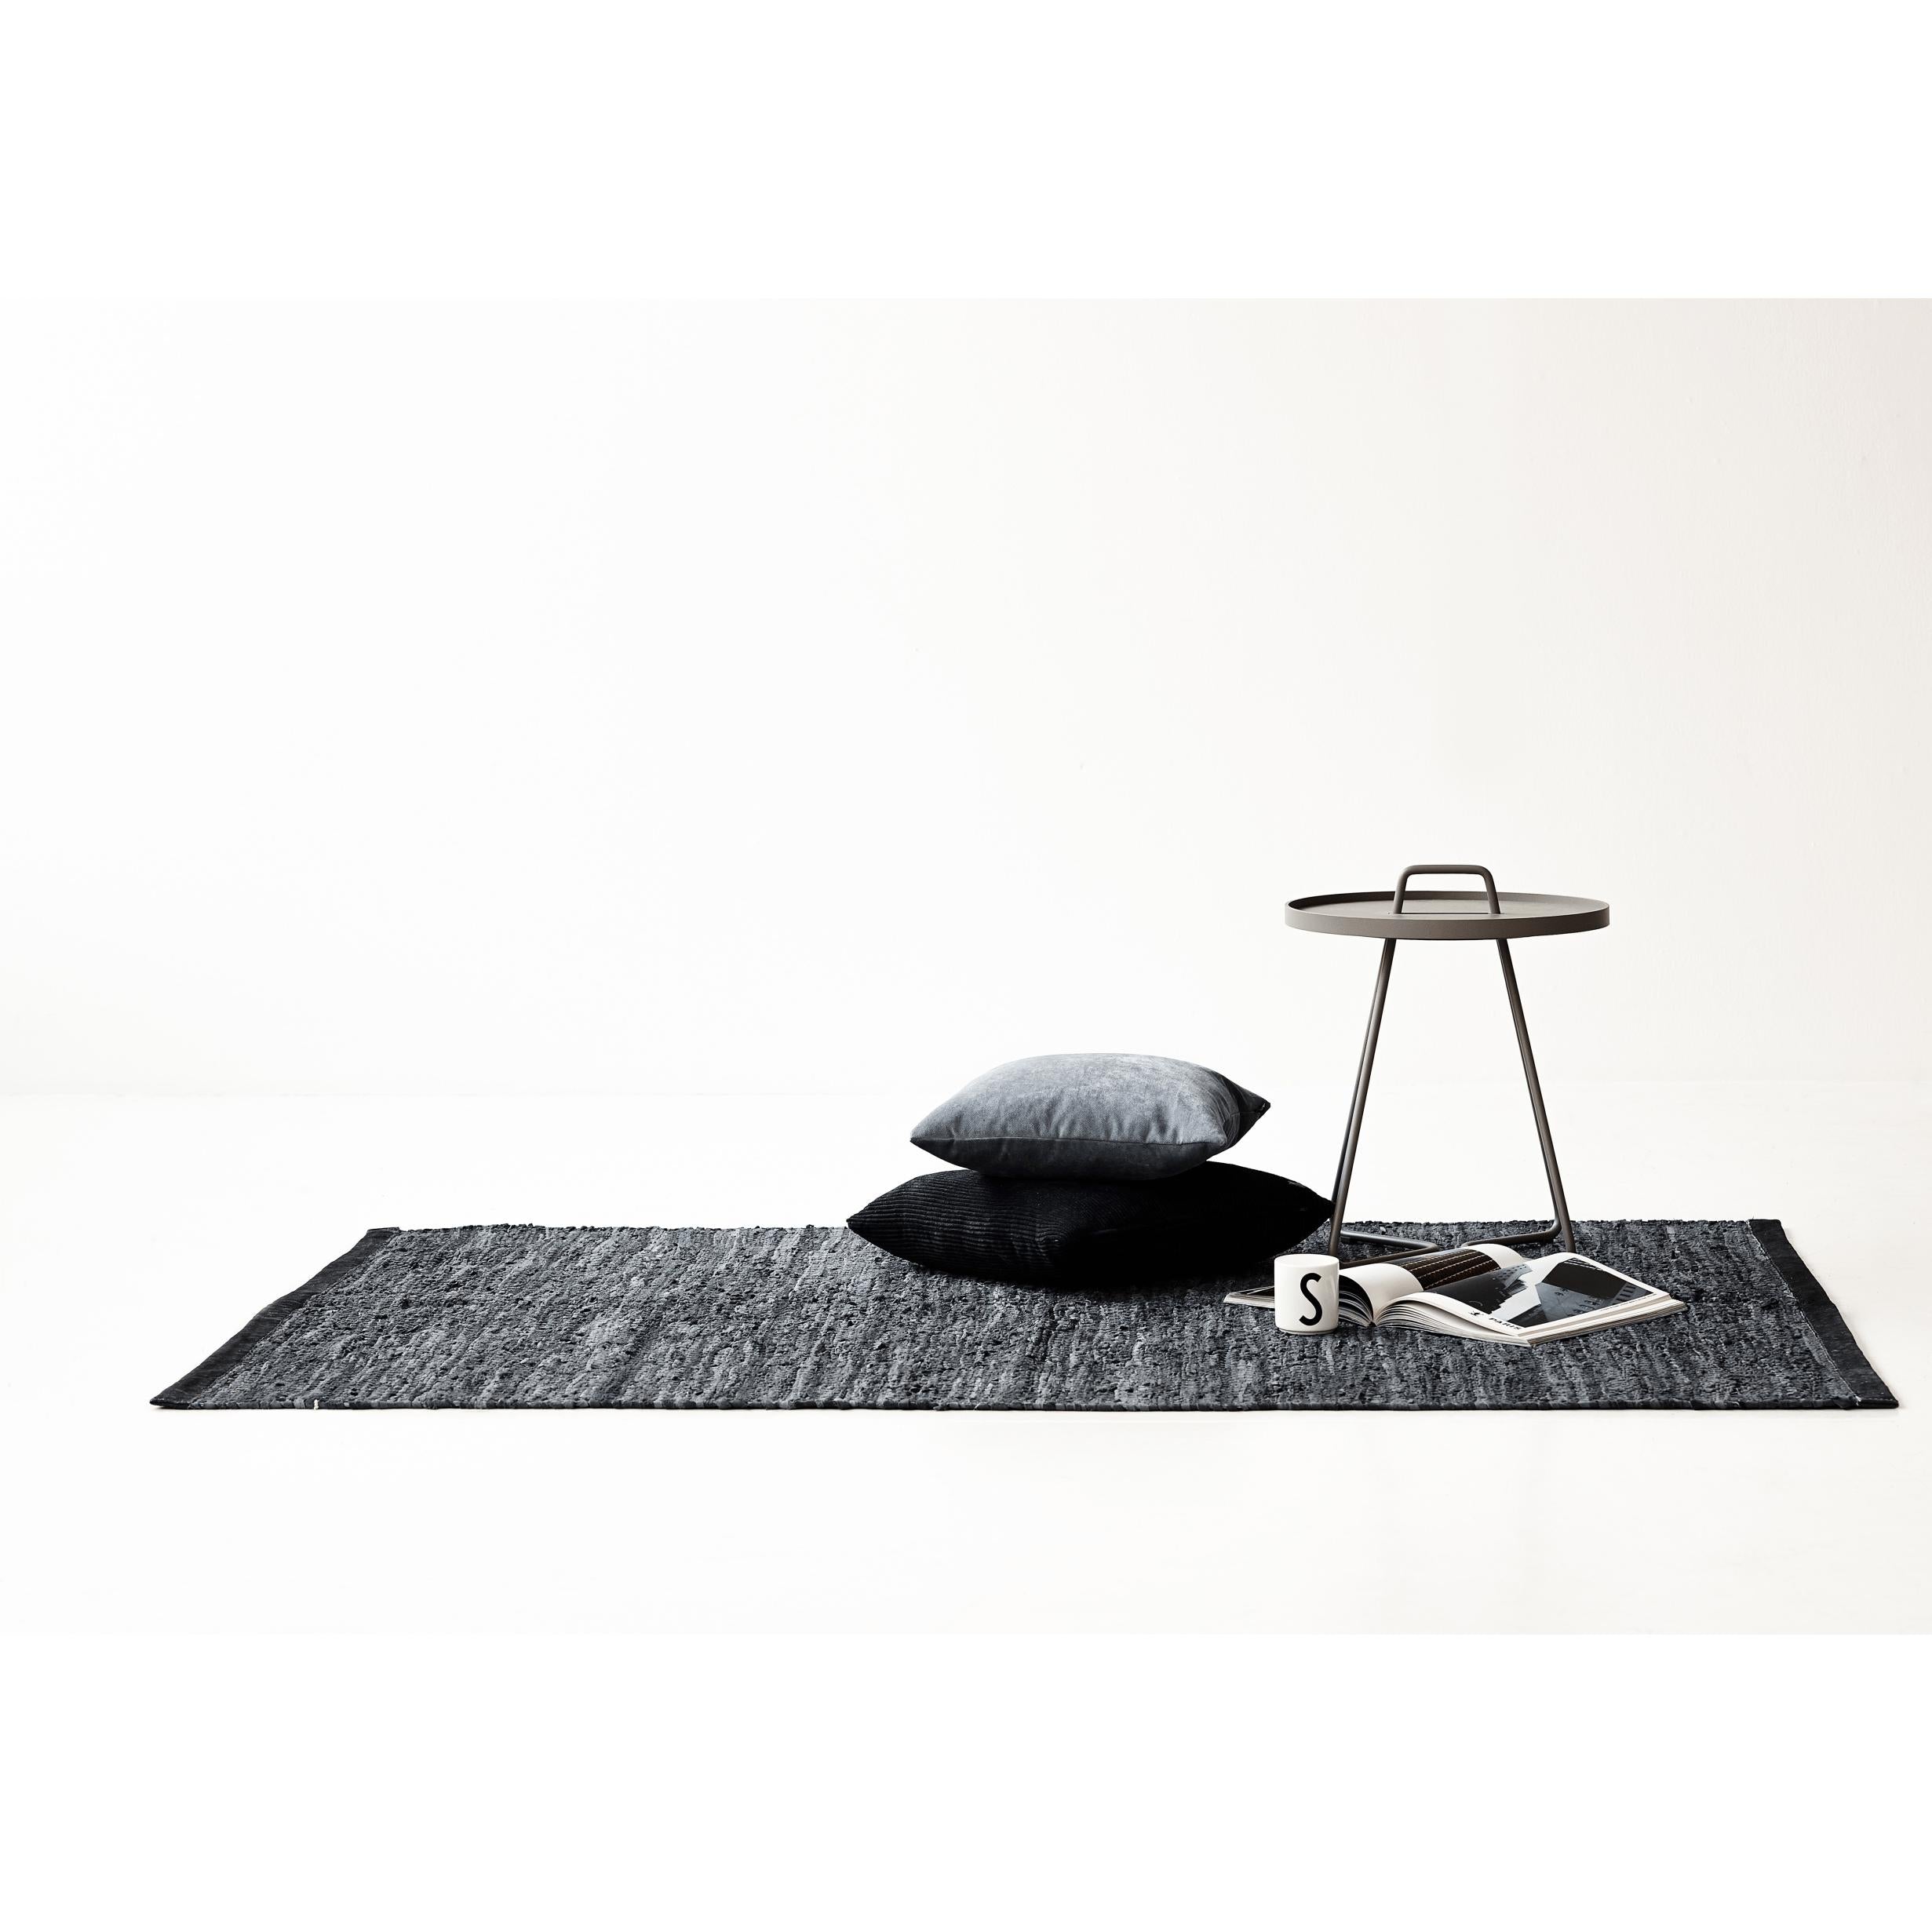 Alfombra de cuero sólido alfombra gris oscuro, 75 x 500 cm